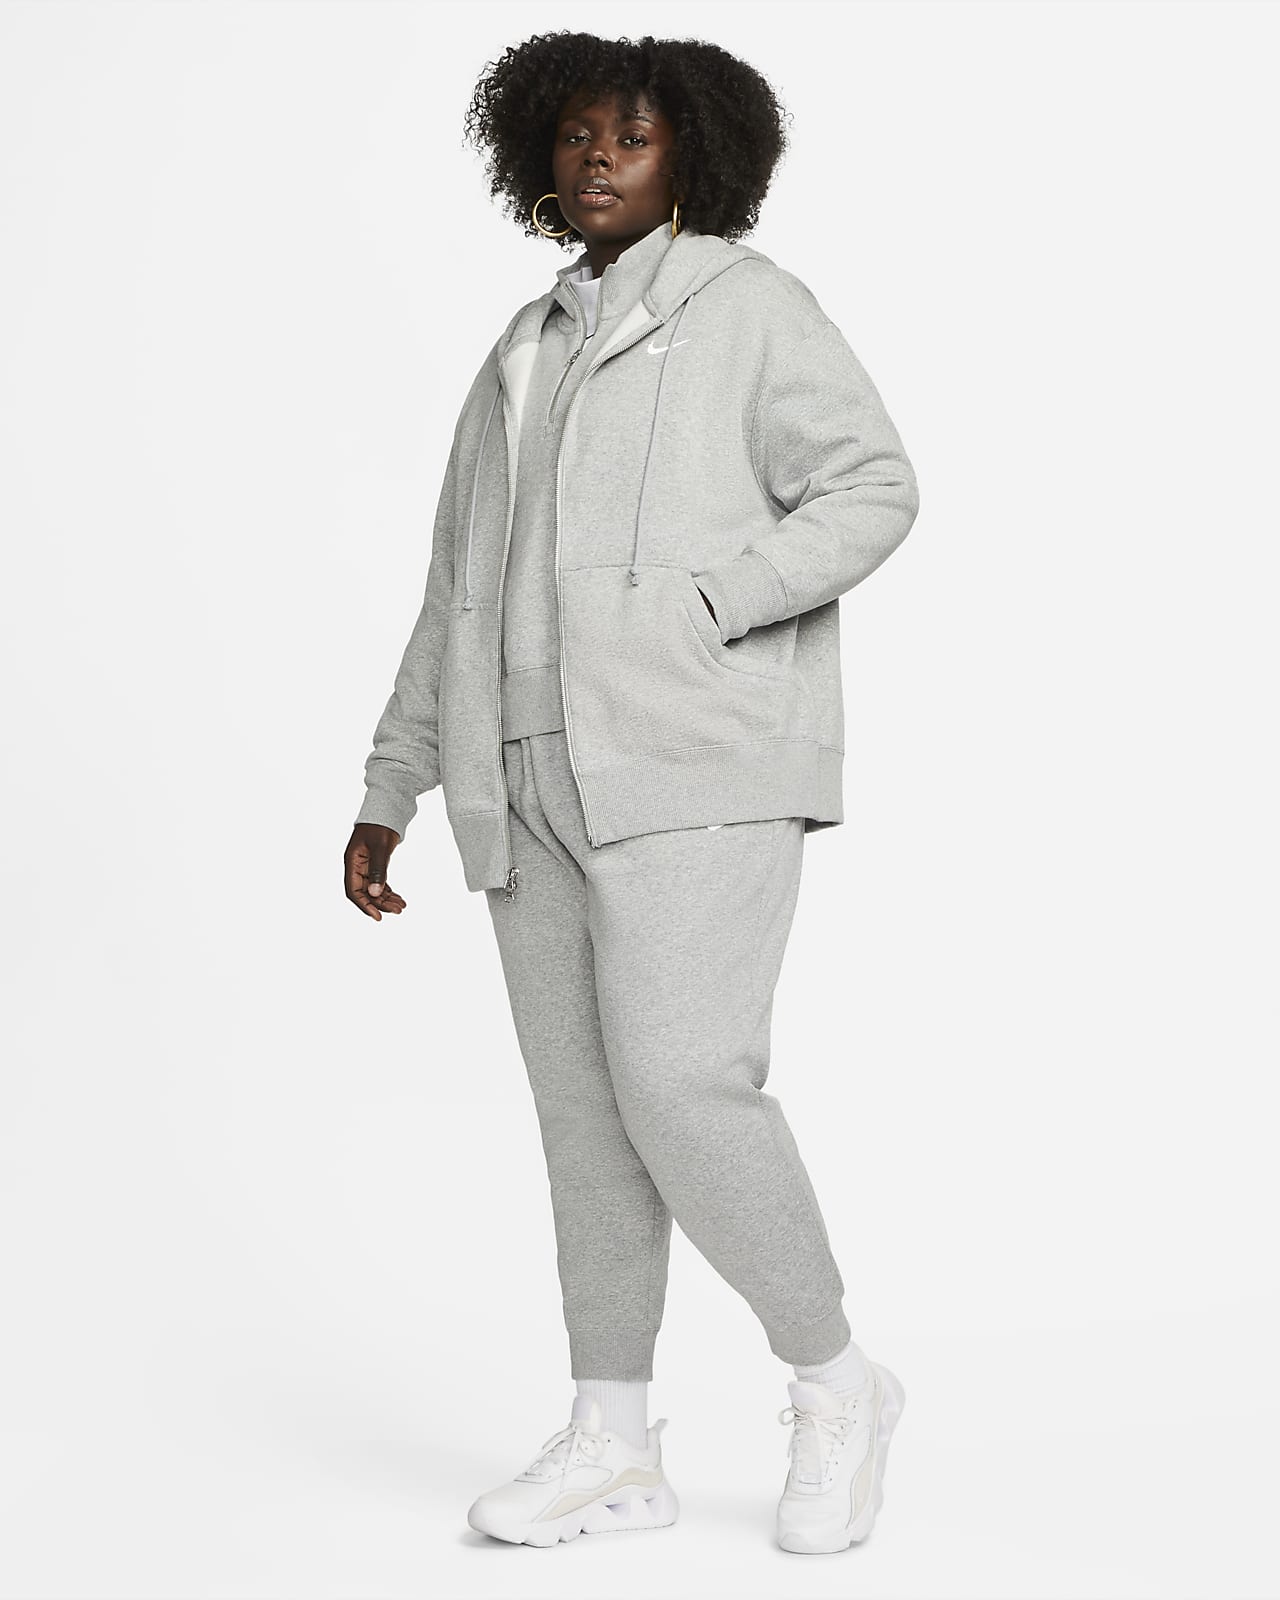 Women's Nike Sportswear Phoenix Fleece Oversized Pullover Hoodie (Plus Size)